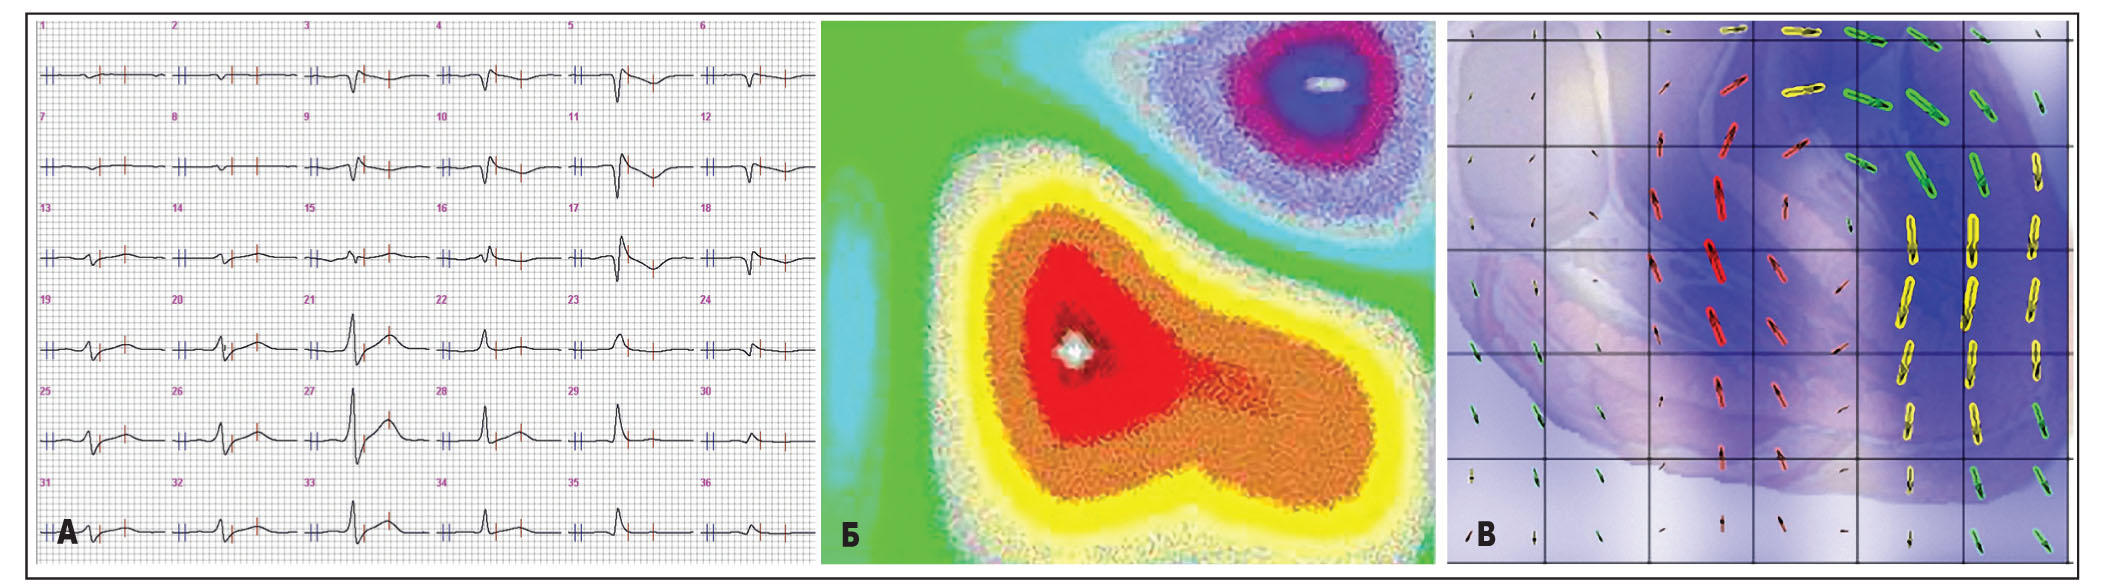 Рис. 2. Різні способи відображення магнітної активності серця: усереднені МКГ-криві (А), карта магнітного поля (Б) та розподілу ВГС (В)